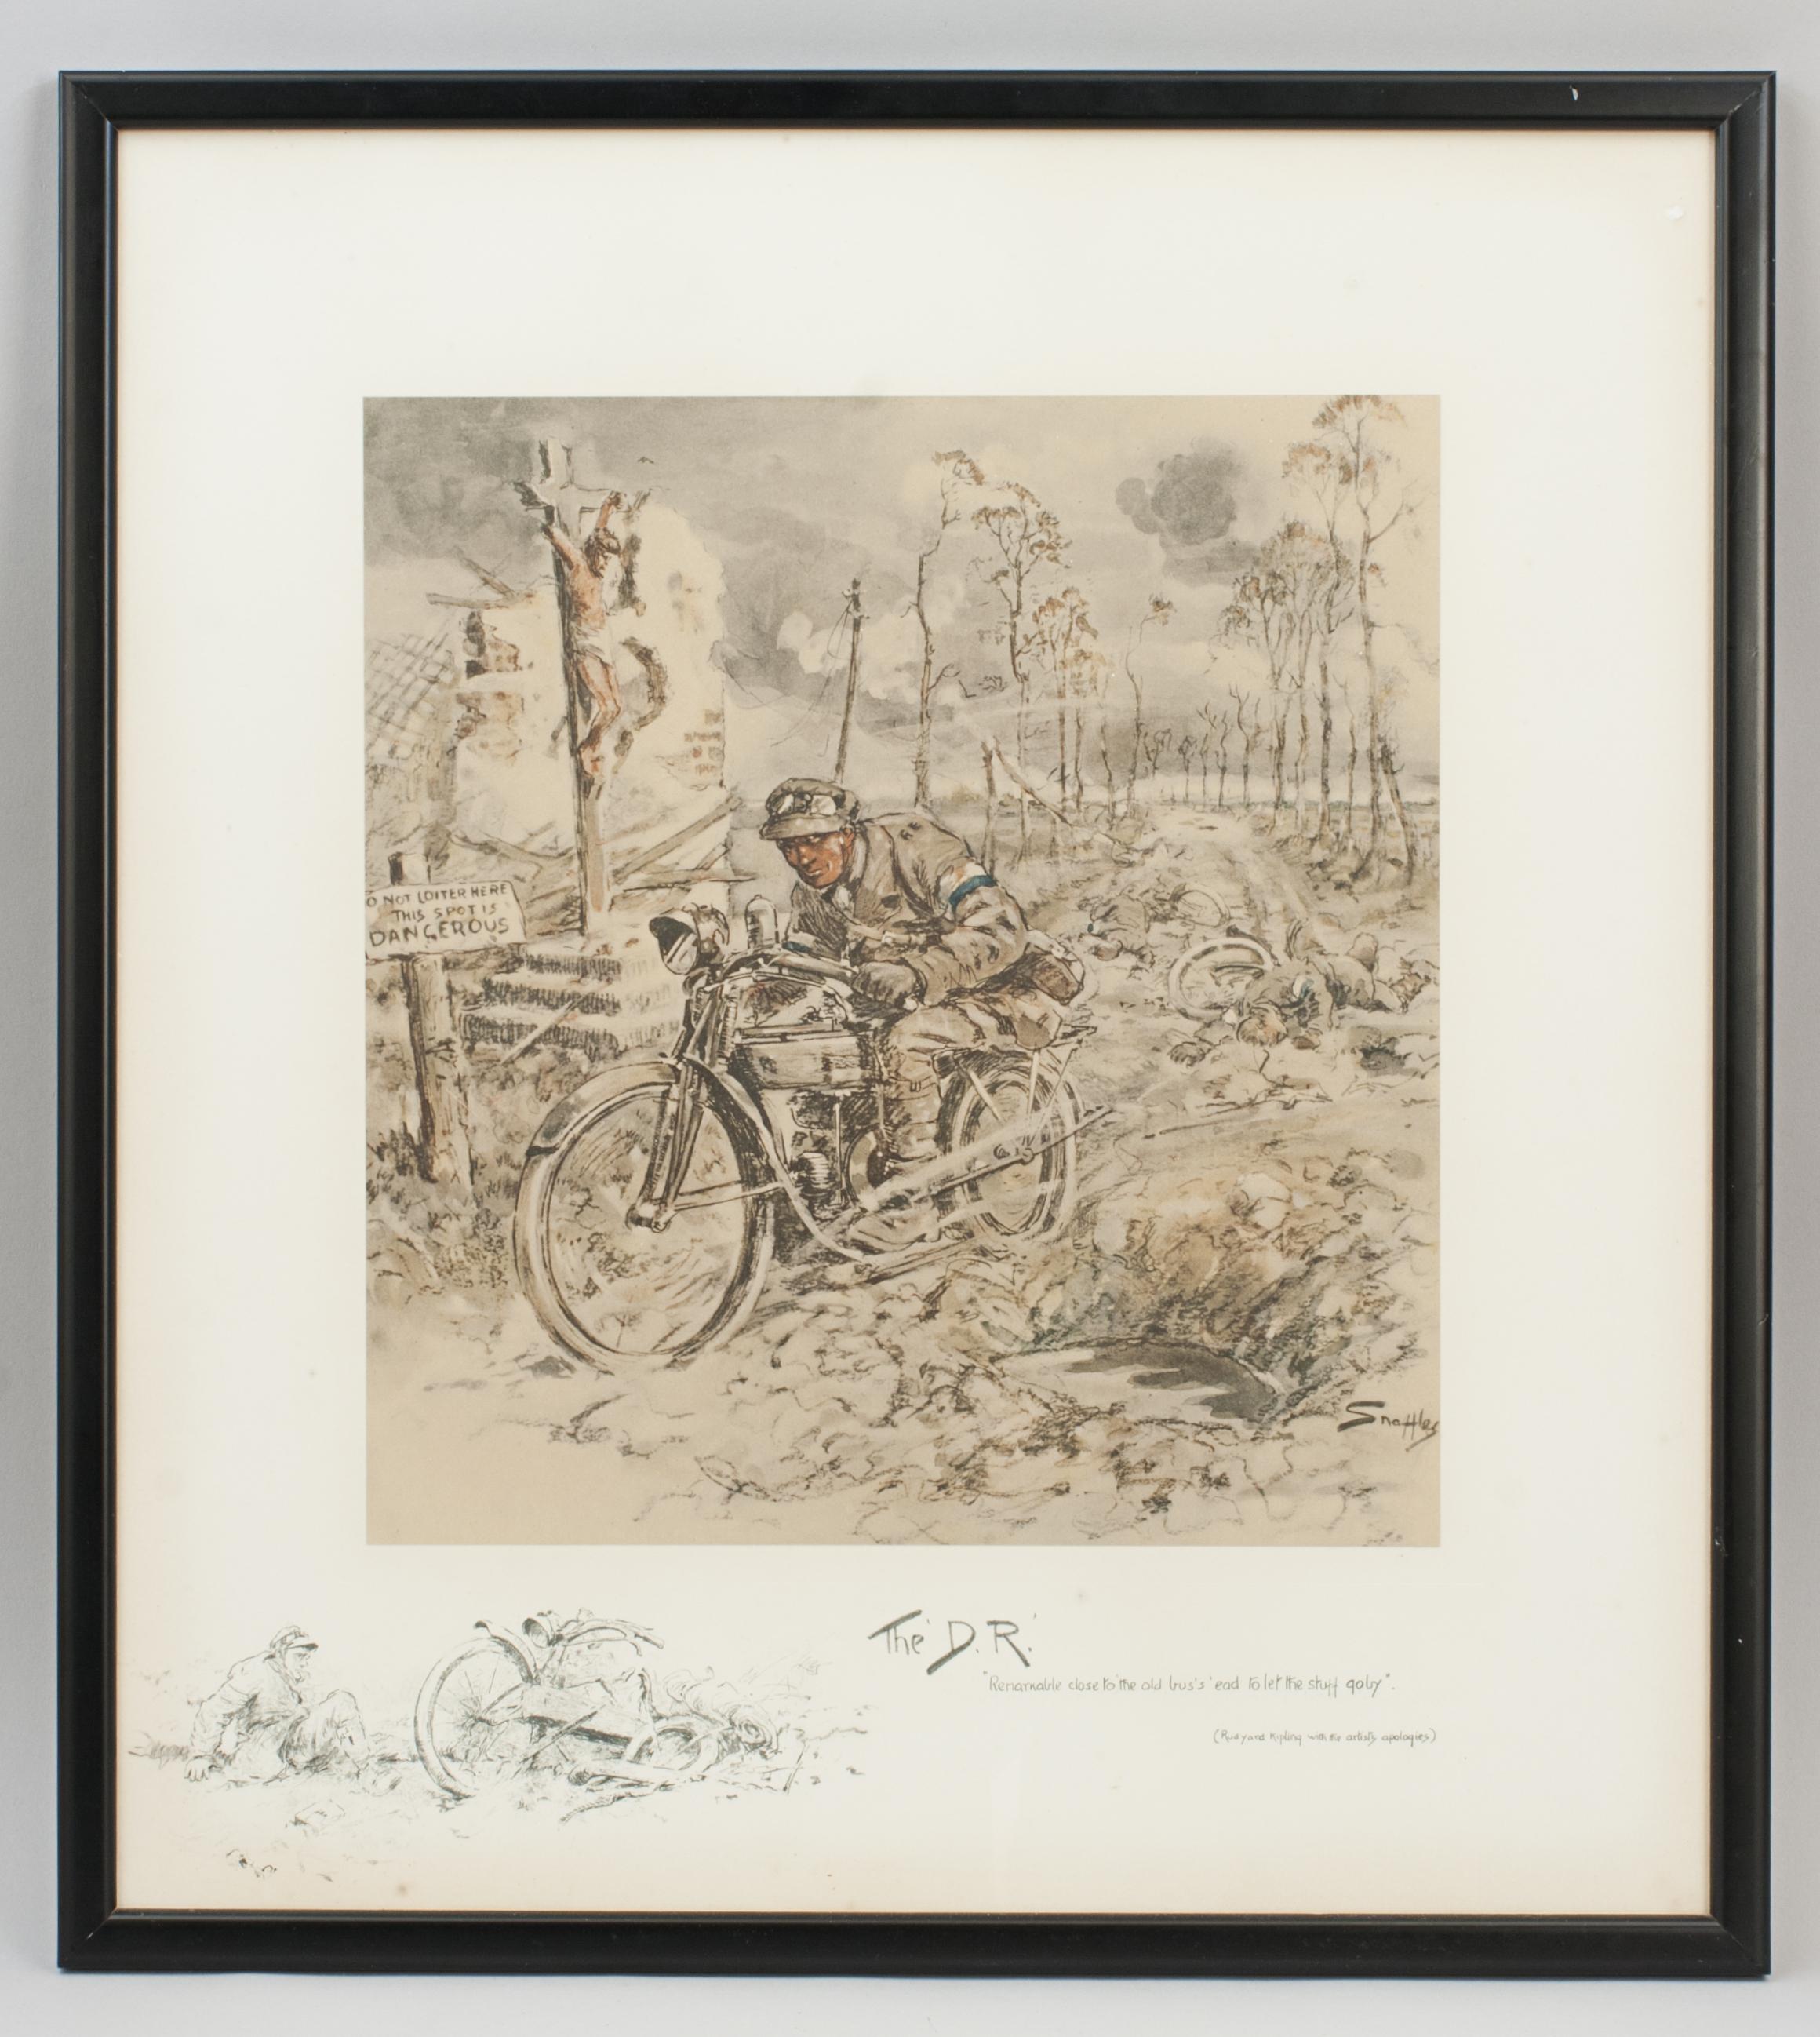 Vintage By By, Impression militaire de la Première Guerre mondiale, Le D.R.
Une bonne gravure militaire de la Première Guerre mondiale de Snaffles, colorée à la main, intitulée 